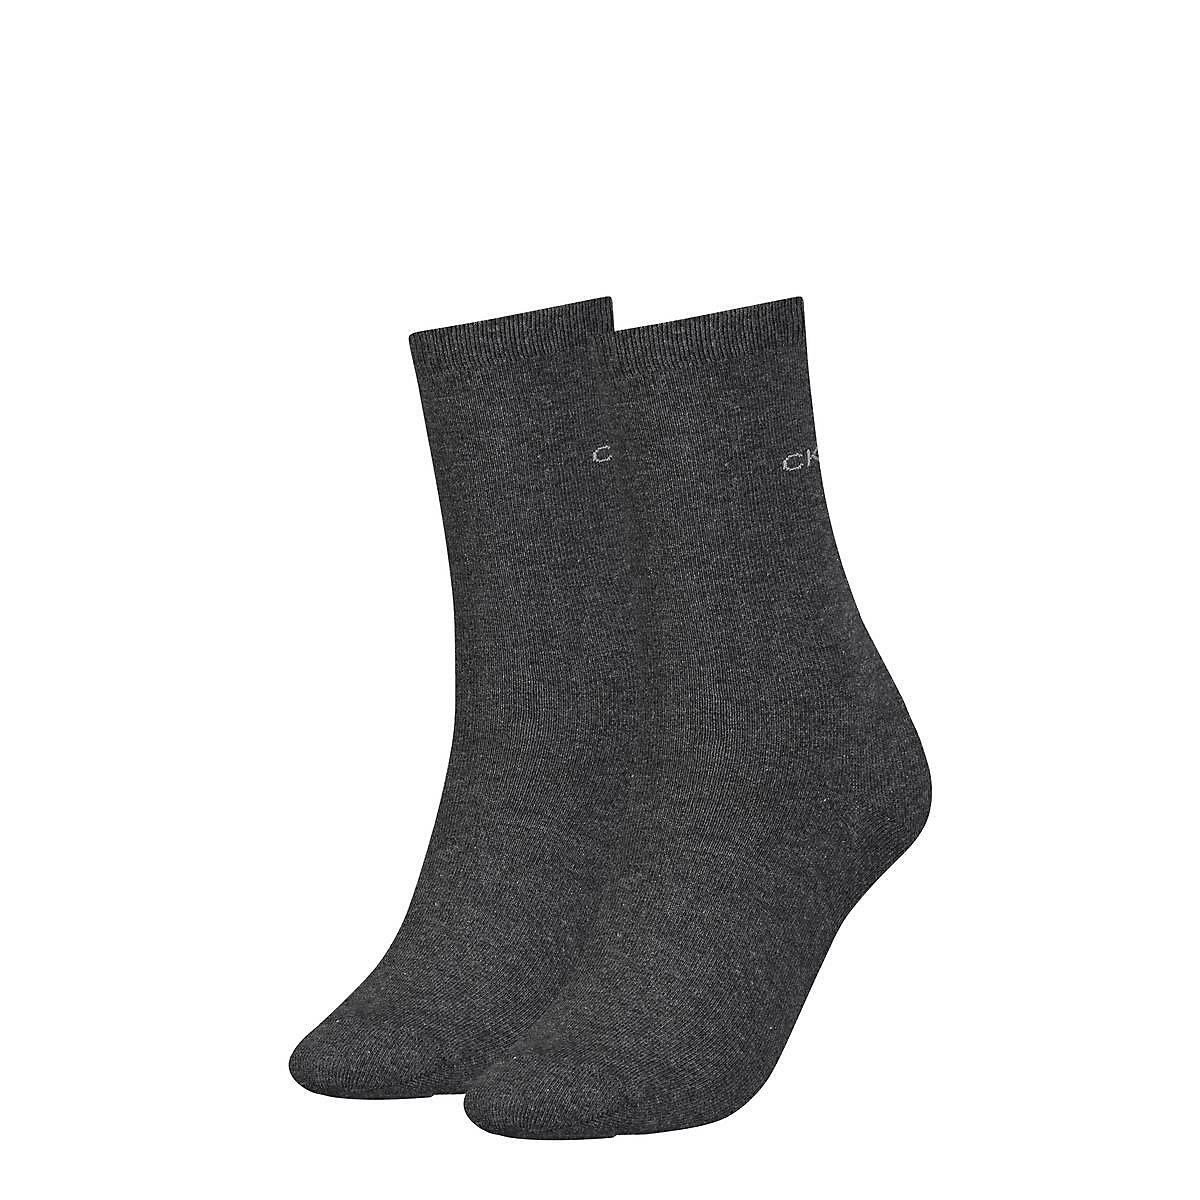 Calvin Klein Damen Socken 2er Pack Kurzsocken One Size einfarbig Socken dunkelgrau